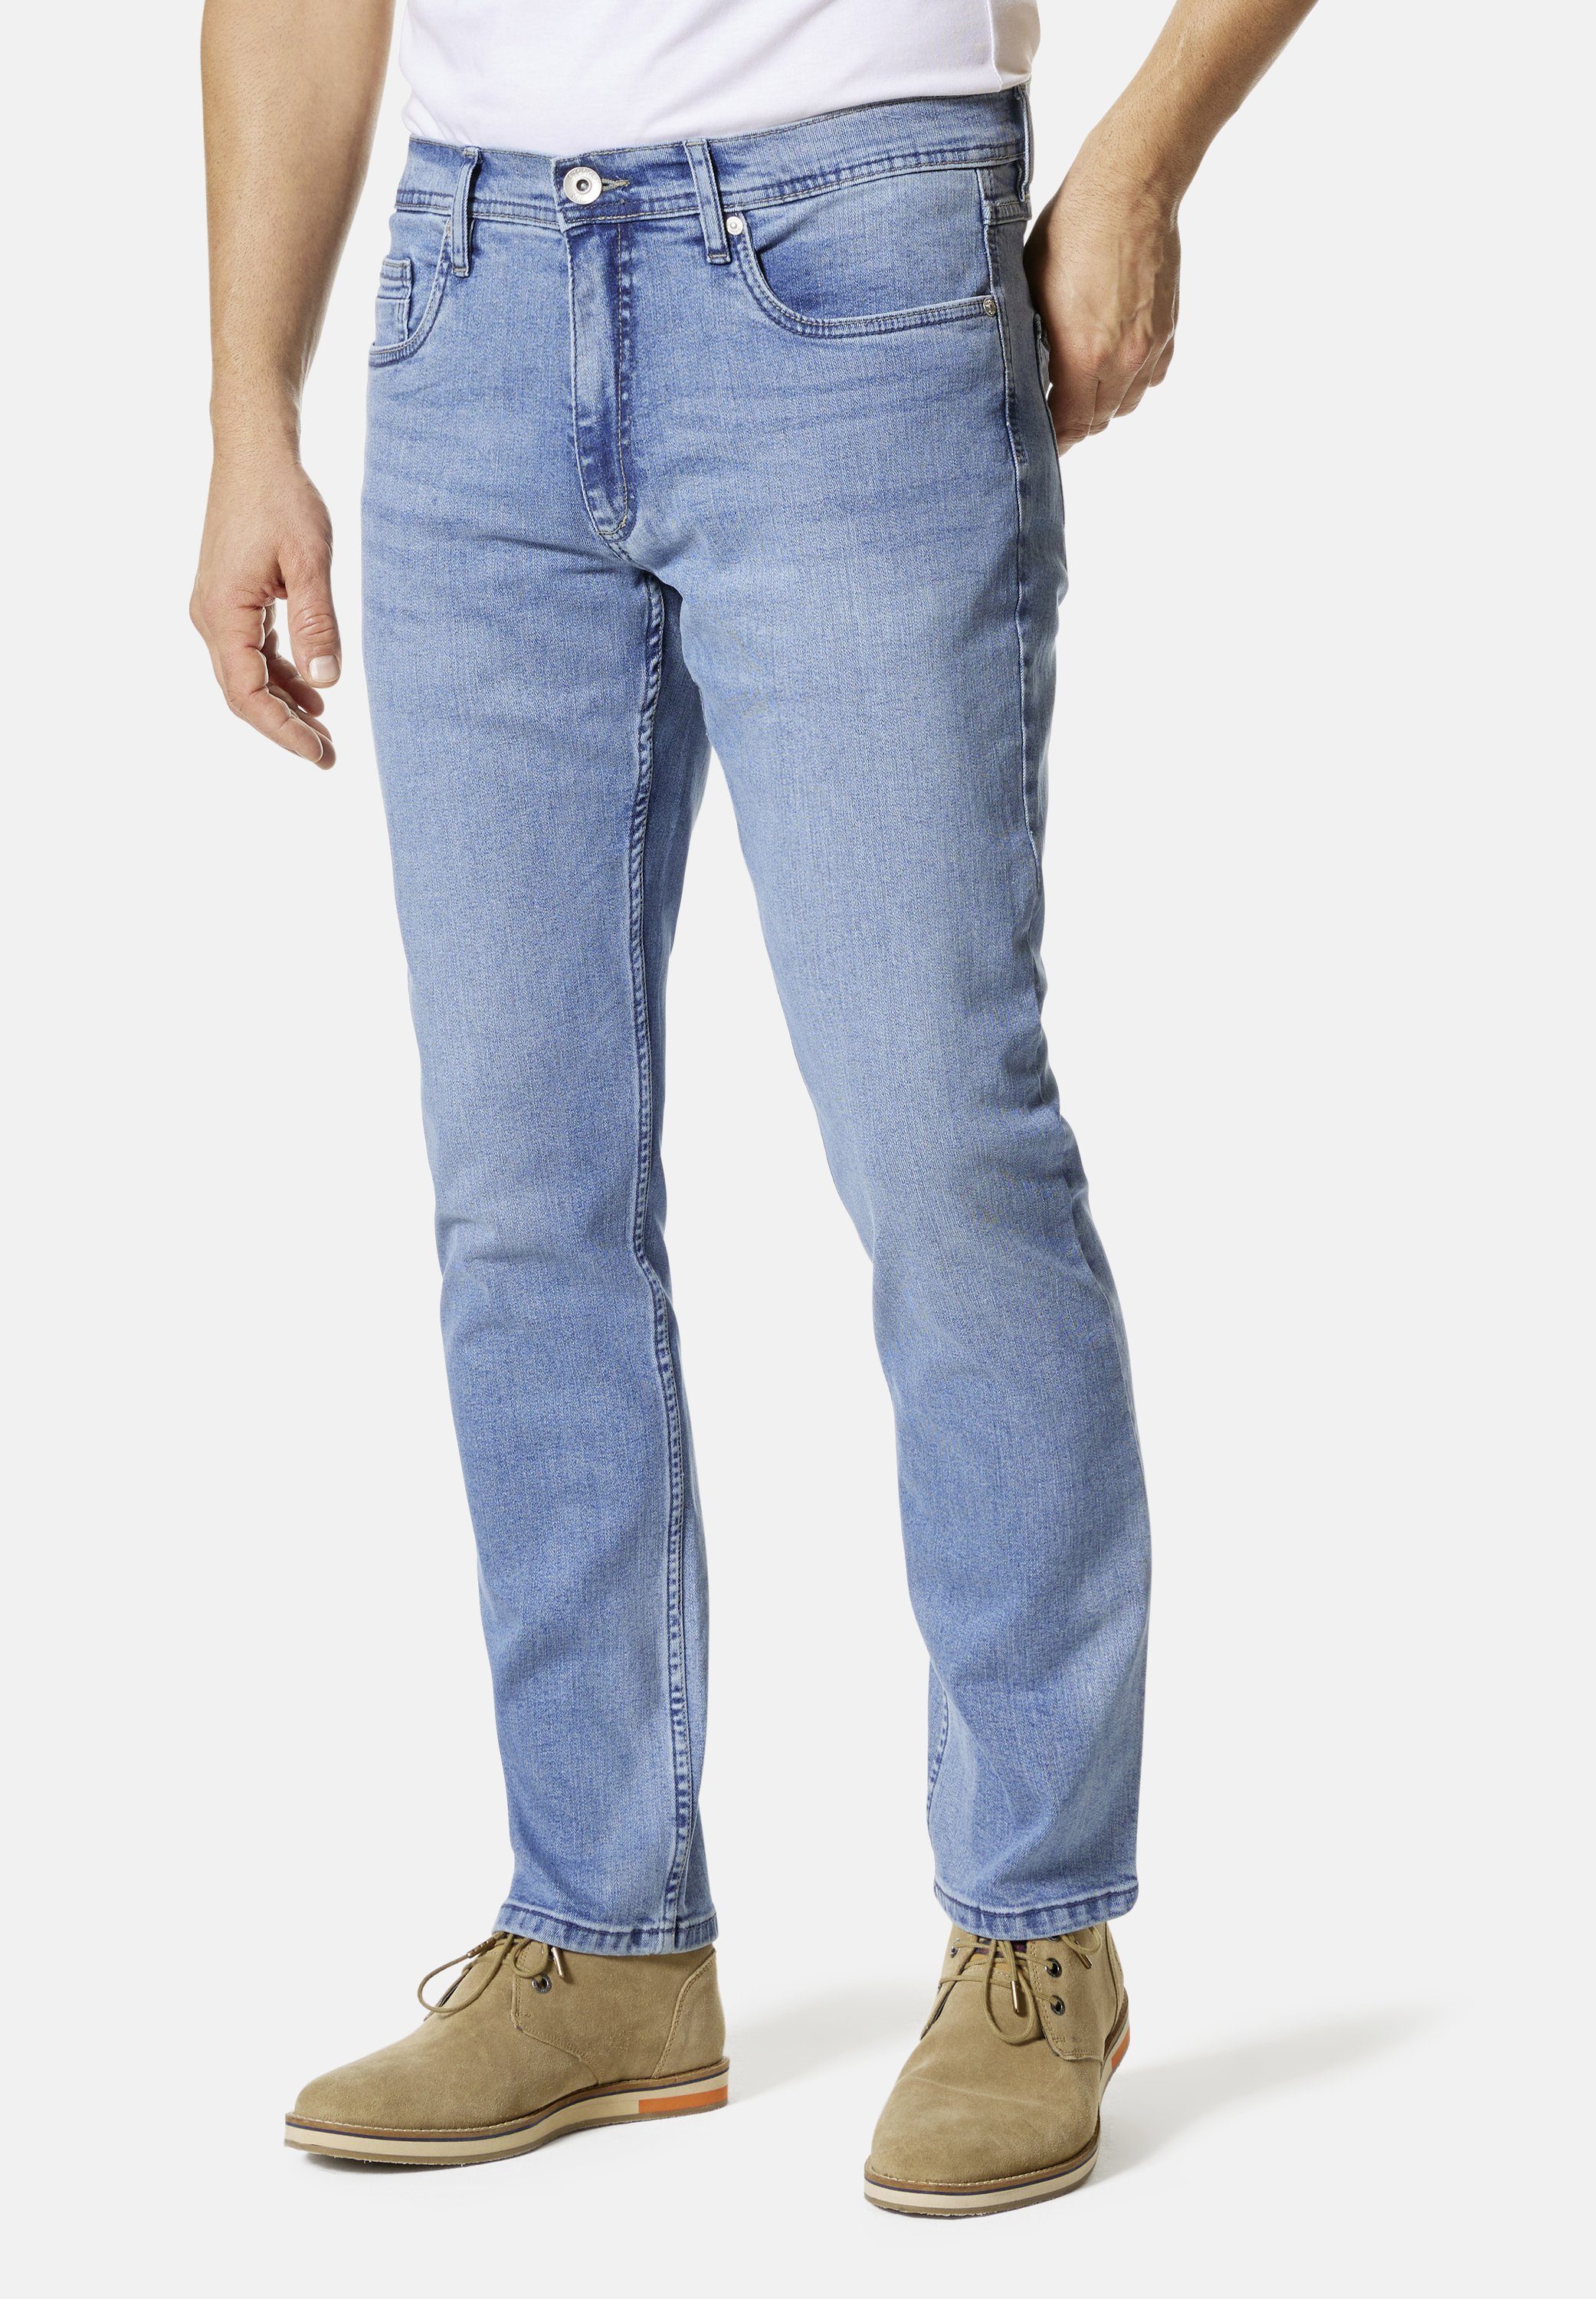 Stooker Men 5-Pocket-Jeans Glendale Denim Straight used skyblue Slim Fit